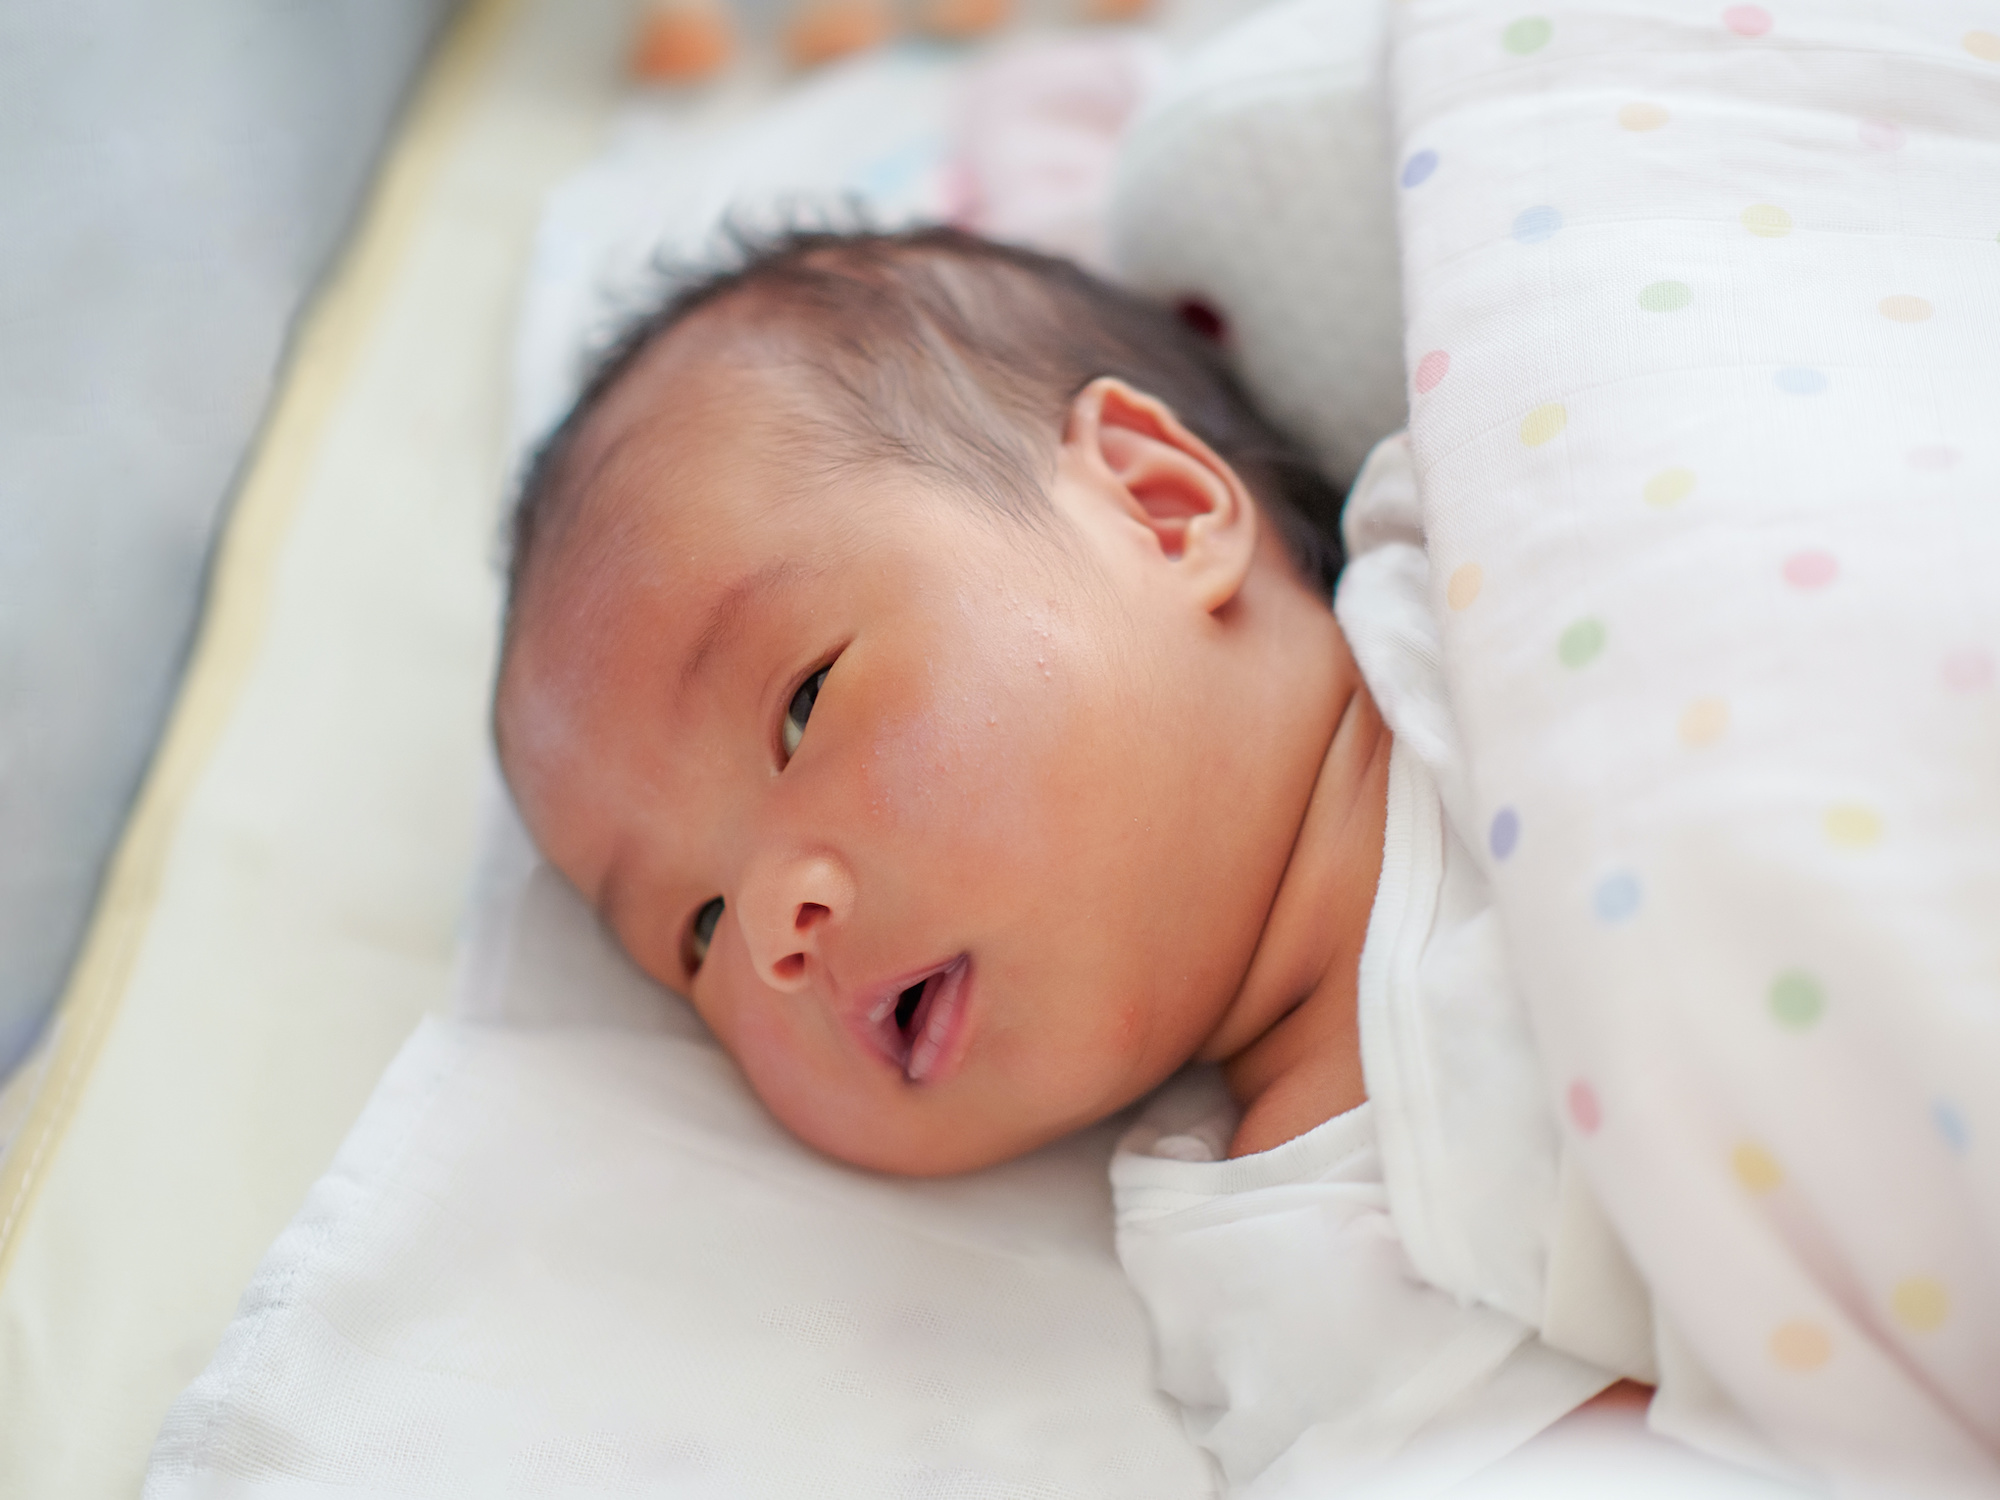 La maladie de Kawasaki touche particulièrement les enfants d’origine asiatique. © photchara, Adobe Stock